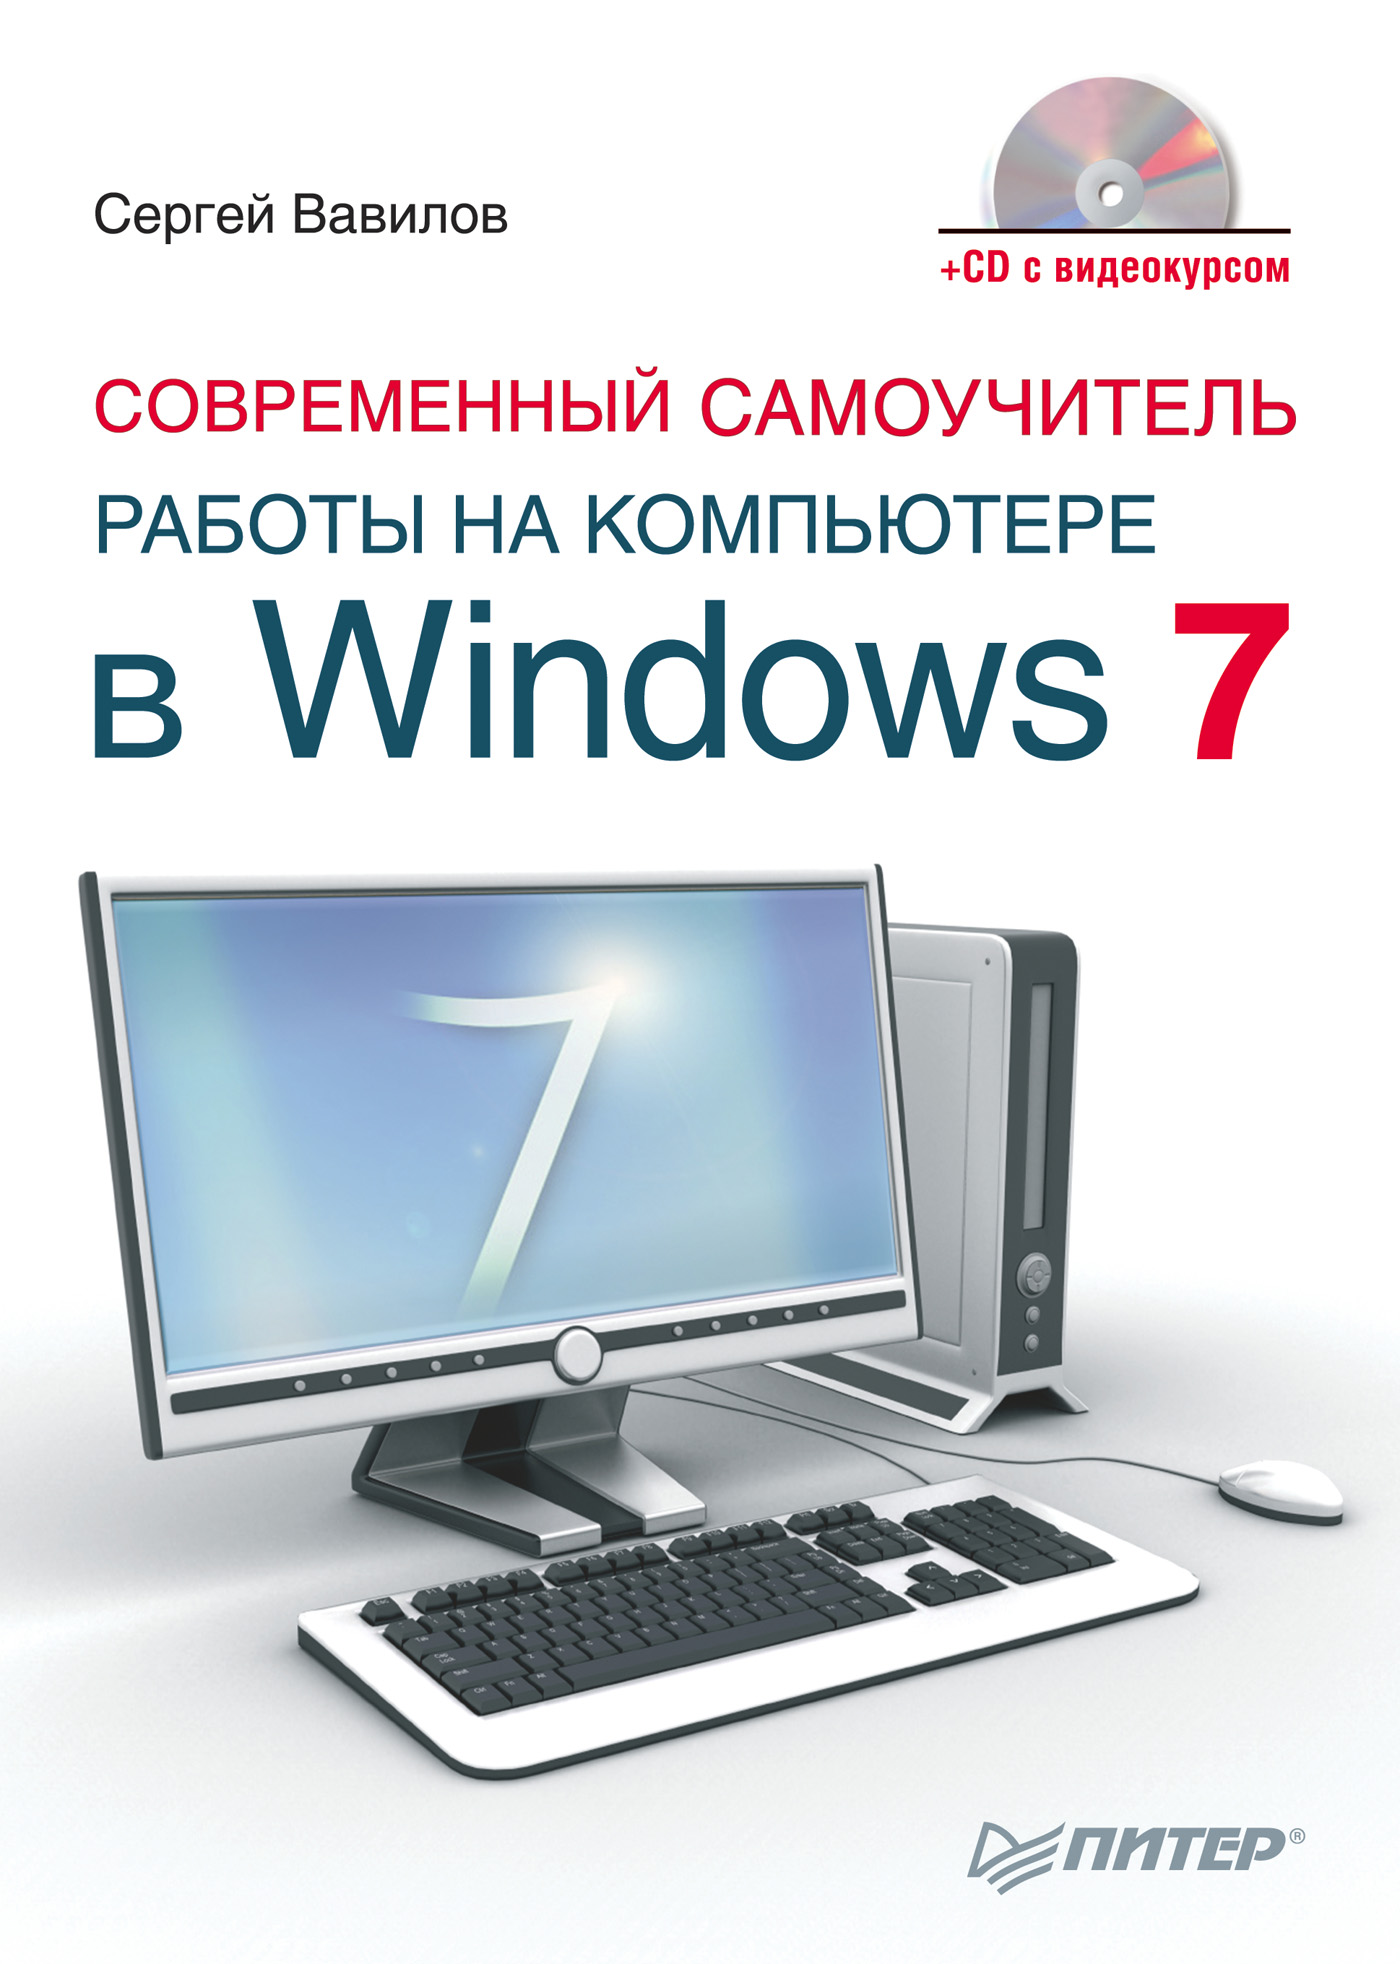 Книга  Современный самоучитель работы на компьютере в Windows 7 созданная Сергей Вавилов может относится к жанру ОС и сети. Стоимость электронной книги Современный самоучитель работы на компьютере в Windows 7 с идентификатором 431862 составляет 99.00 руб.